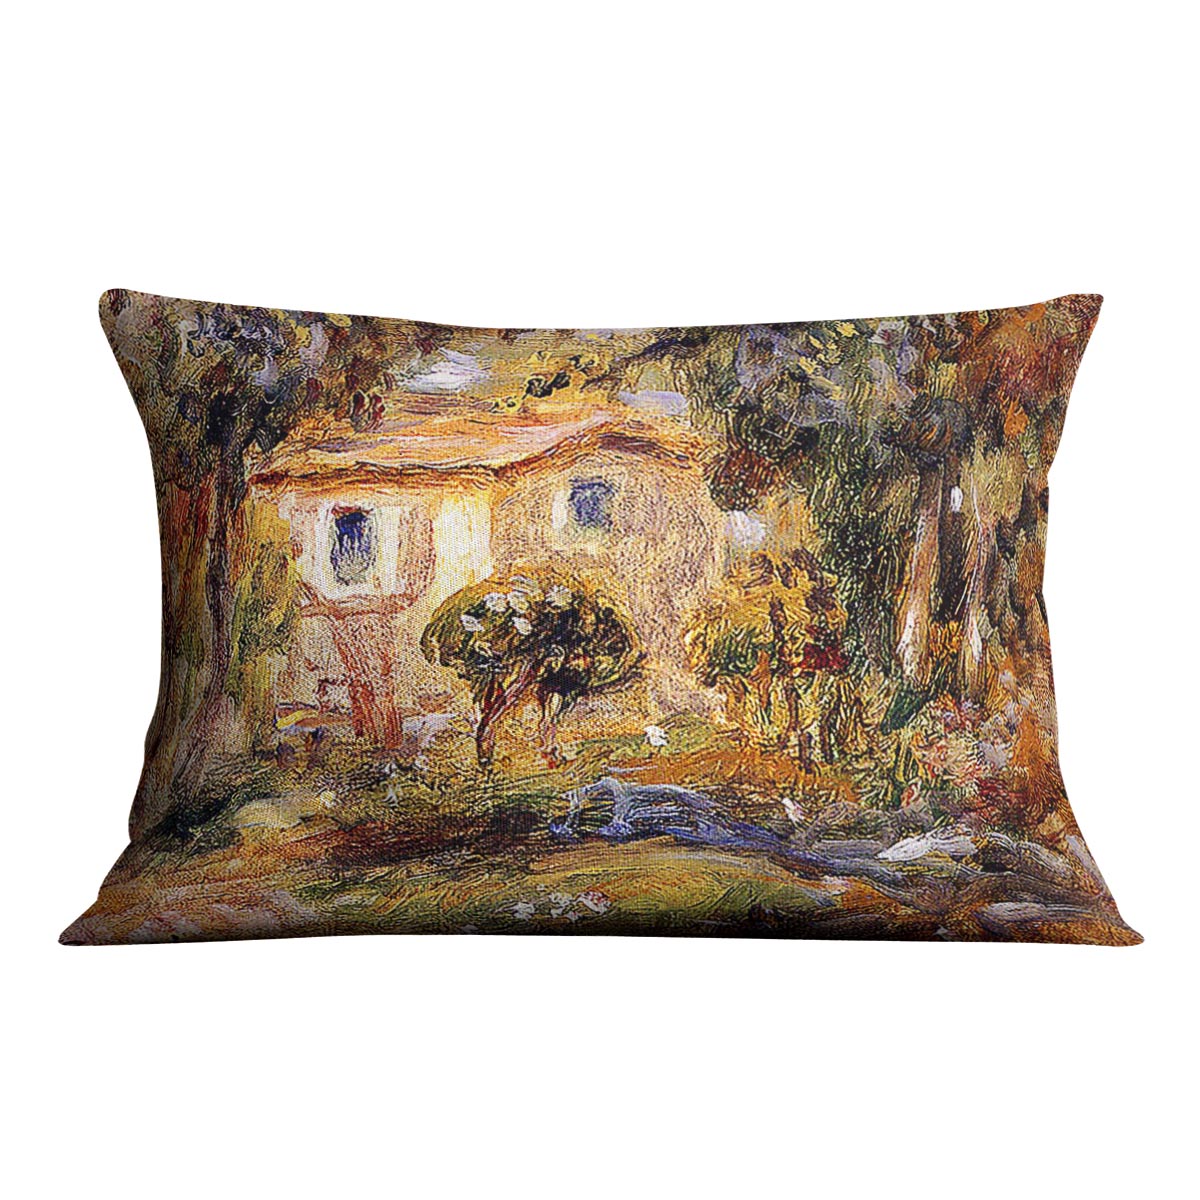 Landscape1 by Renoir Cushion